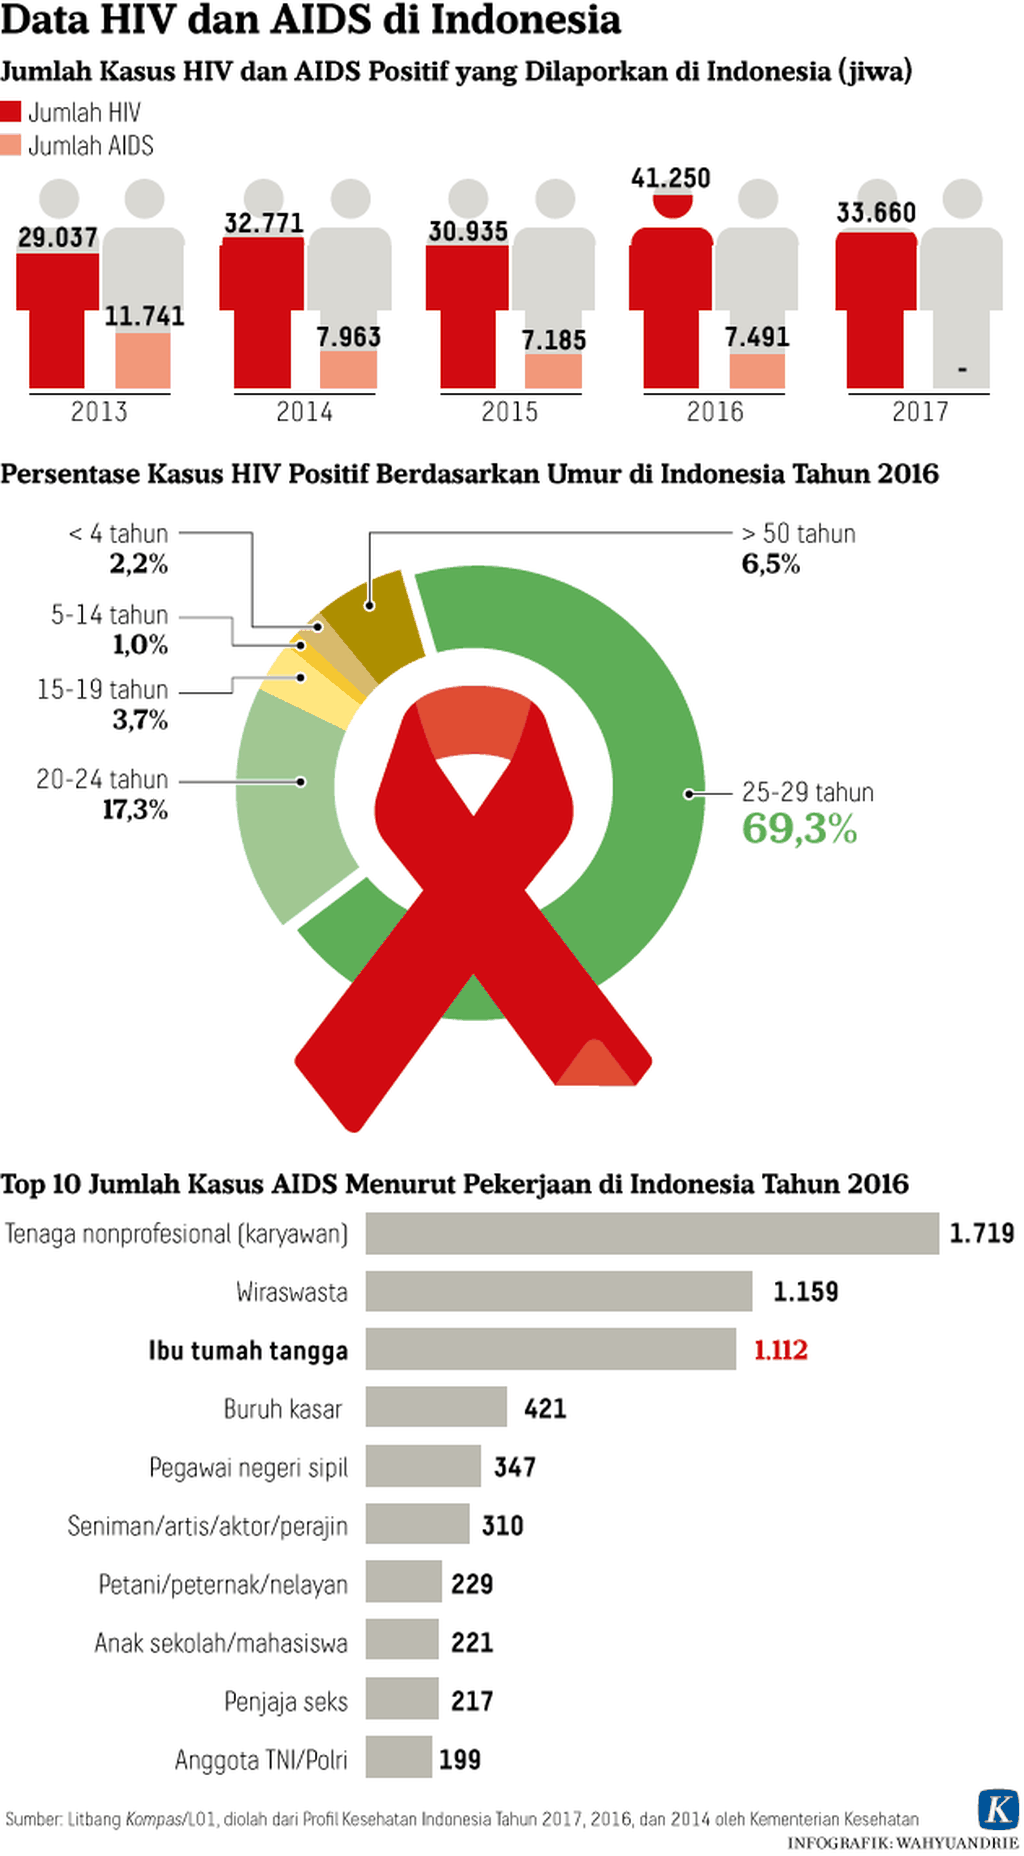 https://cdn-assetd.kompas.id/3R7mJcjdqv3EcObKIHvR8cr6An8=/1024x1856/https%3A%2F%2Fkompas.id%2Fwp-content%2Fuploads%2F2018%2F10%2F20180920-Data-HIV-dan-AIDS-di-Indonesia-mumed_1537433951.png